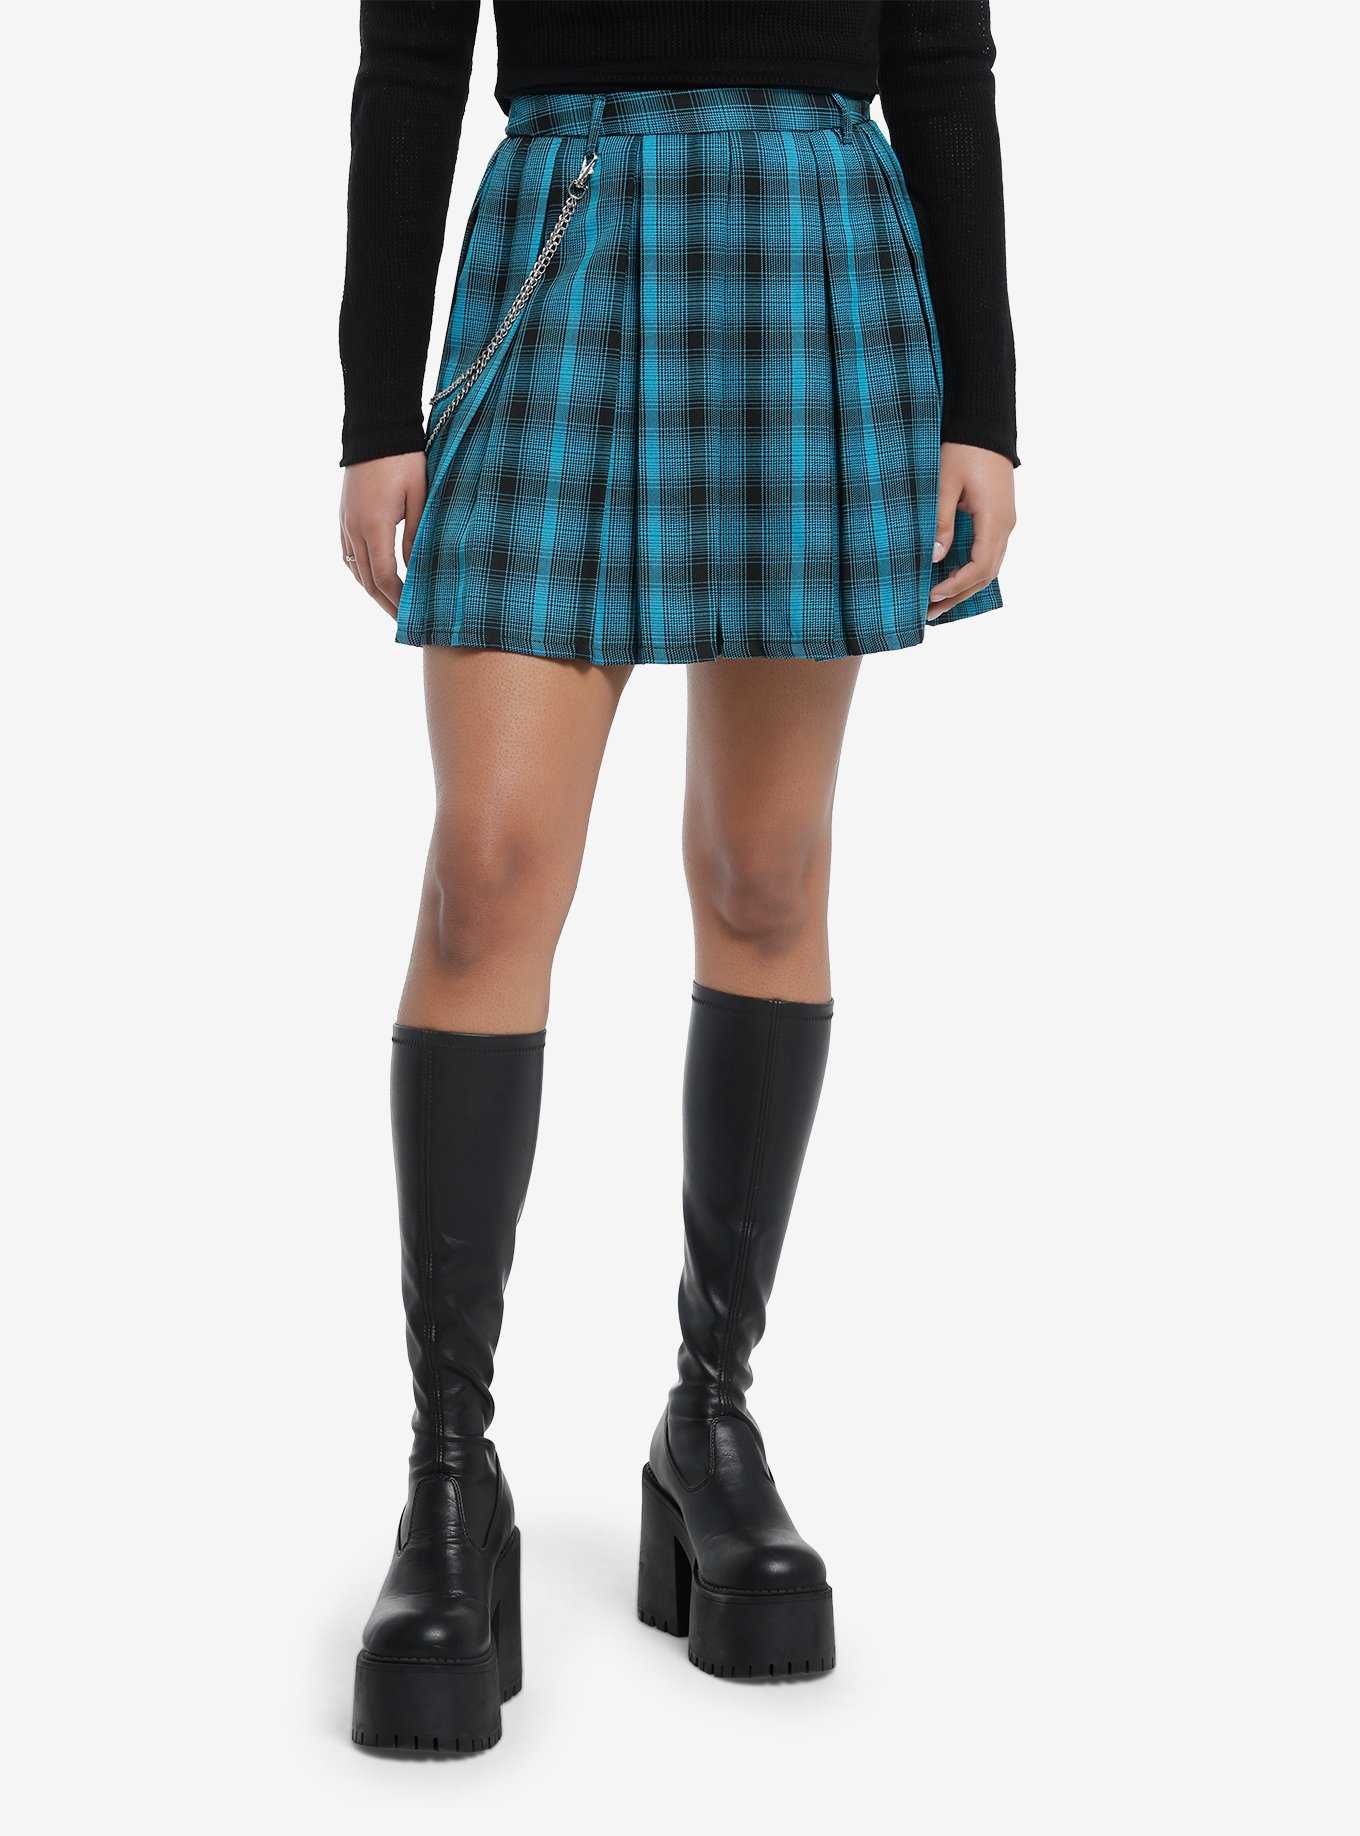 Teal & Black Plaid Pleated Skirt, , hi-res